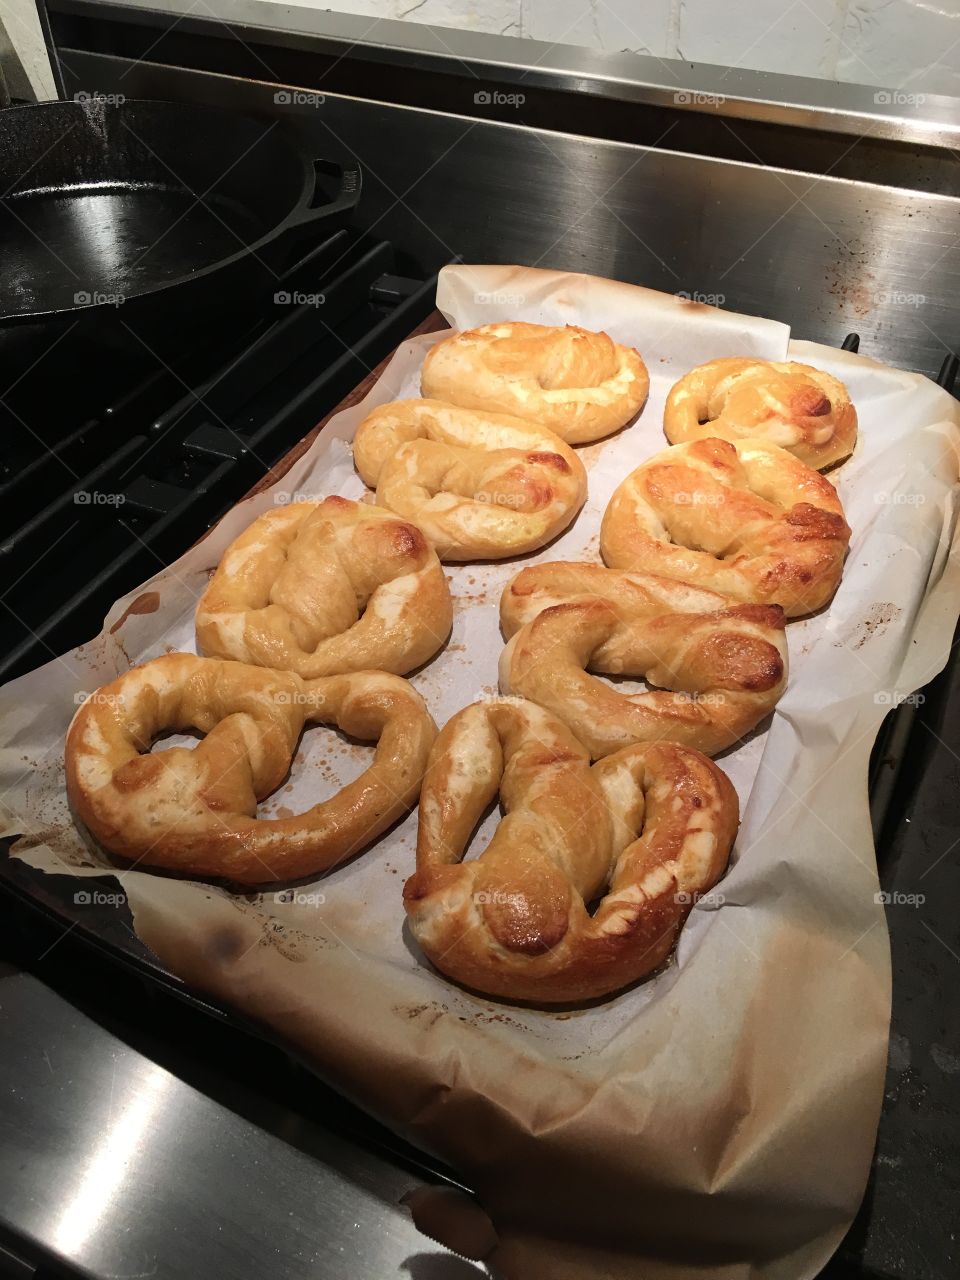 Homemade soft pretzels.